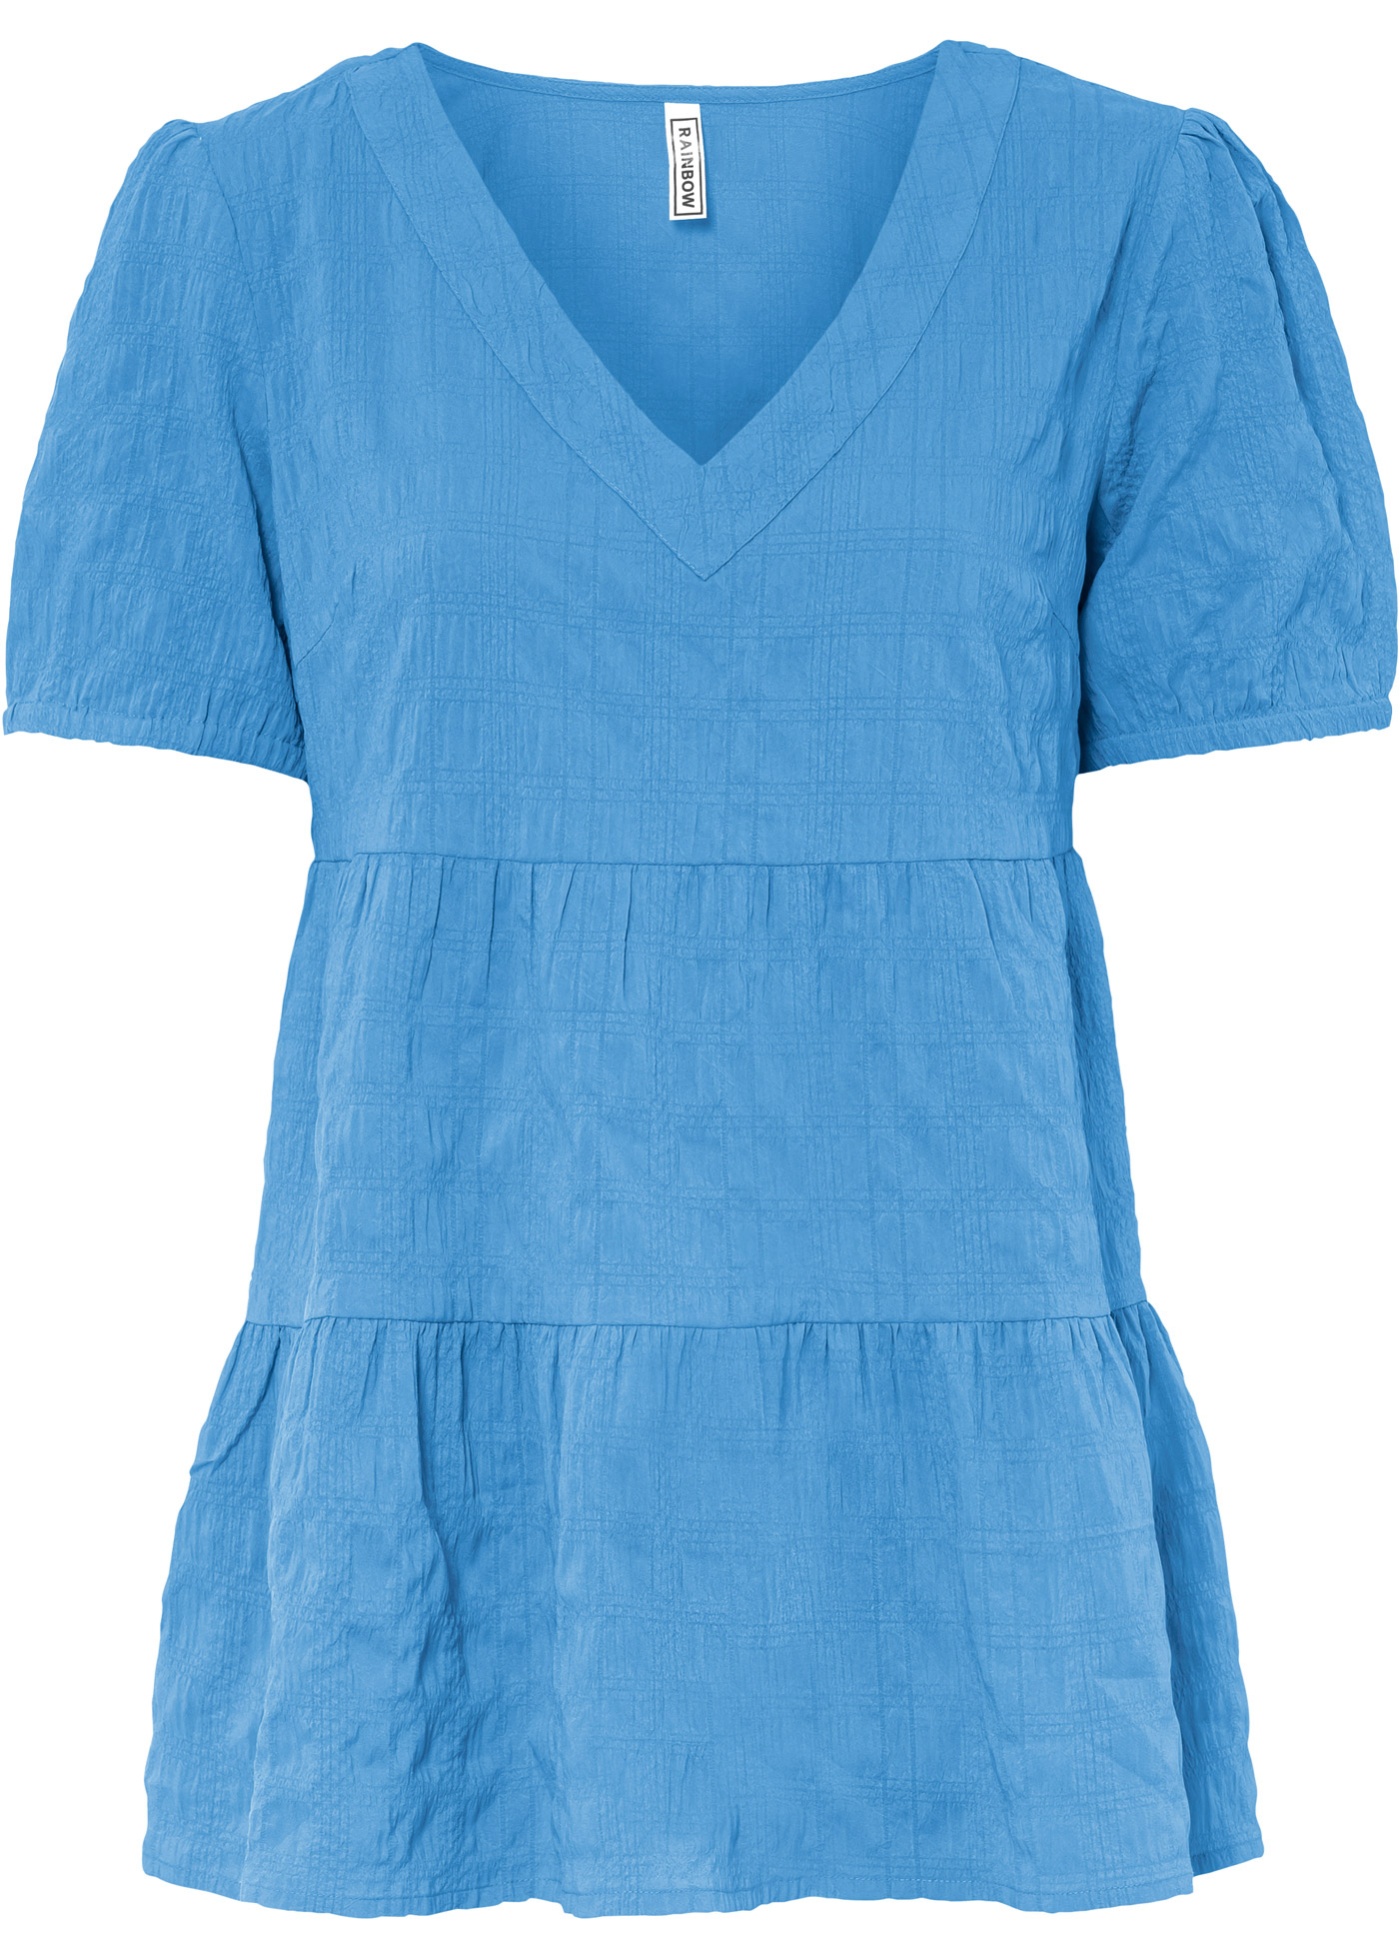 Modische Bluse mit kurzem Arm (91874981) in babyblau